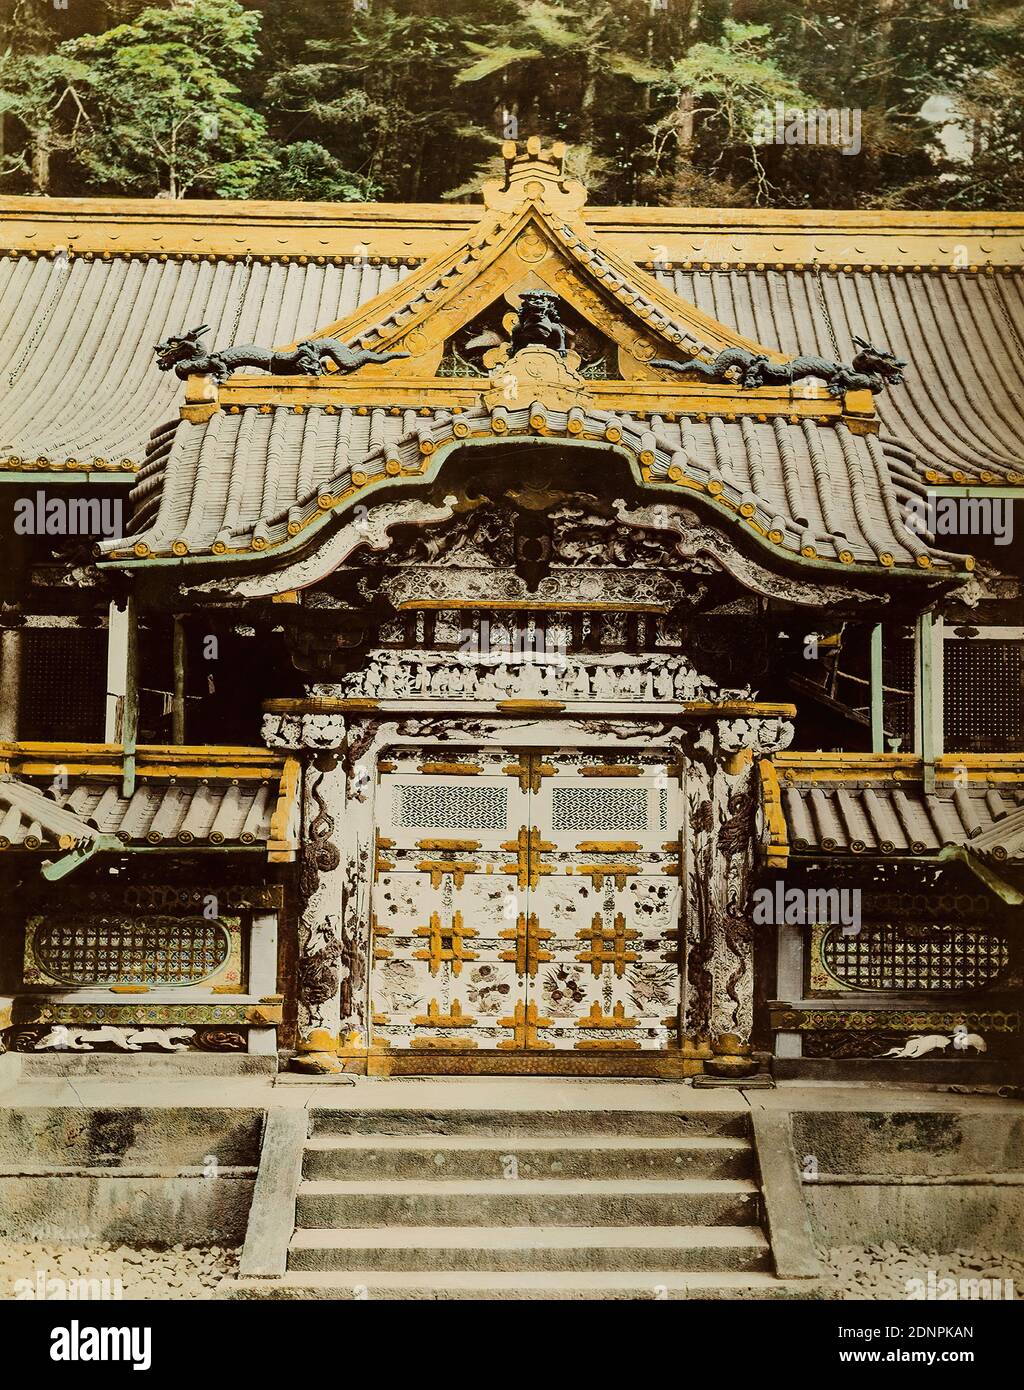 Karamon-Tor, Tōshō-gū Shinto sanctuaire, Nikkō, papier albumine, noir et blanc processus positif, couleur main, taille de l'image: Hauteur: 48.30 cm; largeur: 38.20 cm, inscrit: Recto U.: En plomb: Karamon. Nikko, photographie de voyage, portail/edicula, après l'ouverture des ports japonais, les temples de Nikkō, à environ 100 kilomètres au nord de Tokyo, sont devenus une destination populaire pour les Européens et les Américains, qui ont été attirés par les complexes de bâtiments aux couleurs vives et la proximité de la capitale. Nikkō est encore aujourd'hui un lieu de pèlerinage important : la ville abrite le sanctuaire du fondateur d'Edo Shogunta Banque D'Images